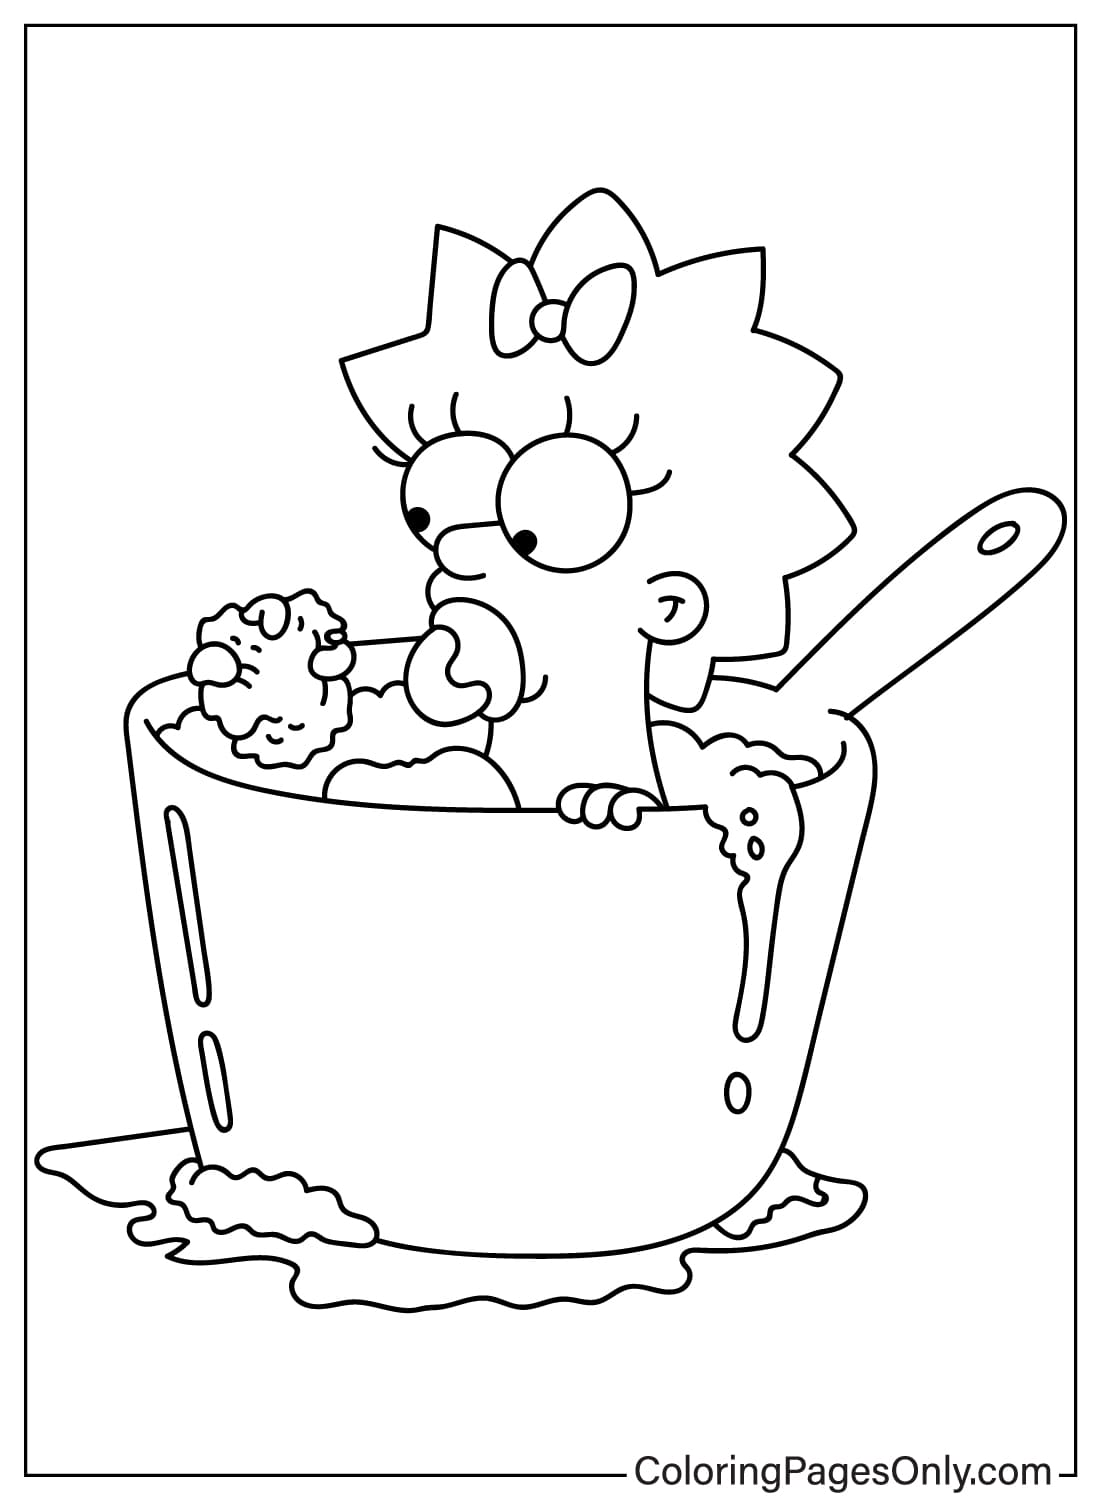 Página para colorear de Maggie gratis de Los Simpson